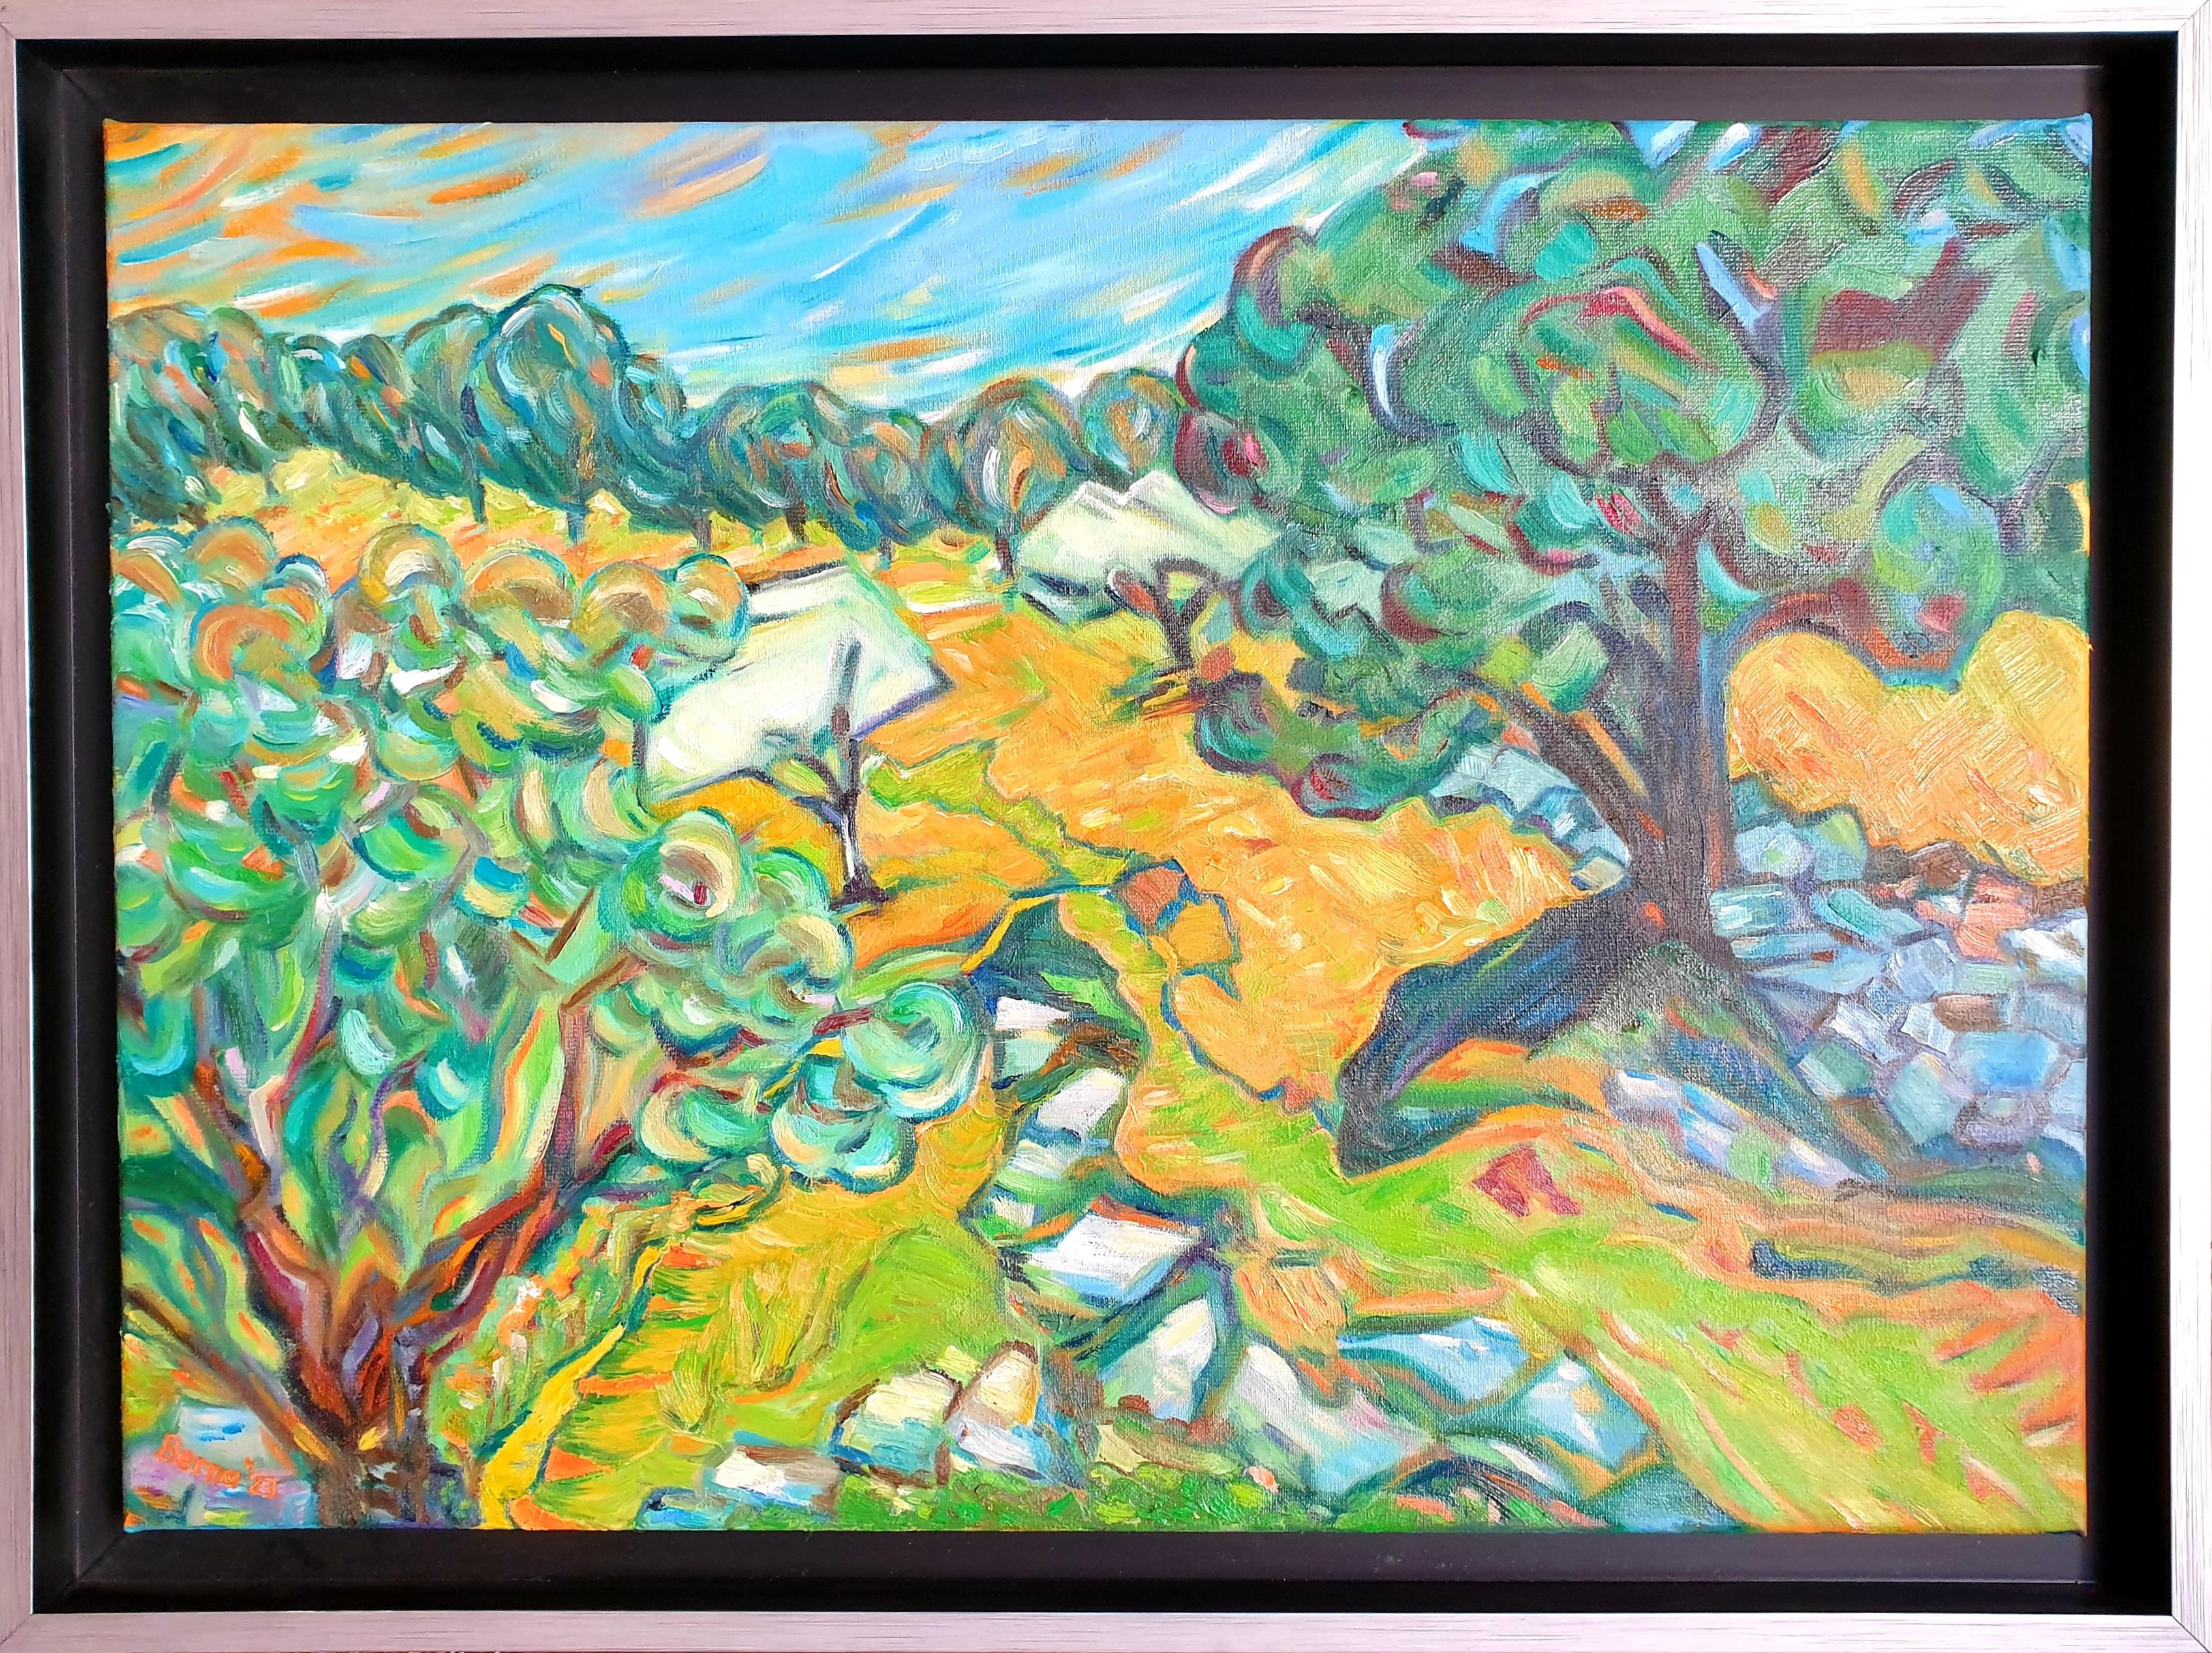 Landscape Painting Bernadette van Baarsen - "Terranque", acrylique contemporaine d'expressionnisme abstrait sur toile.